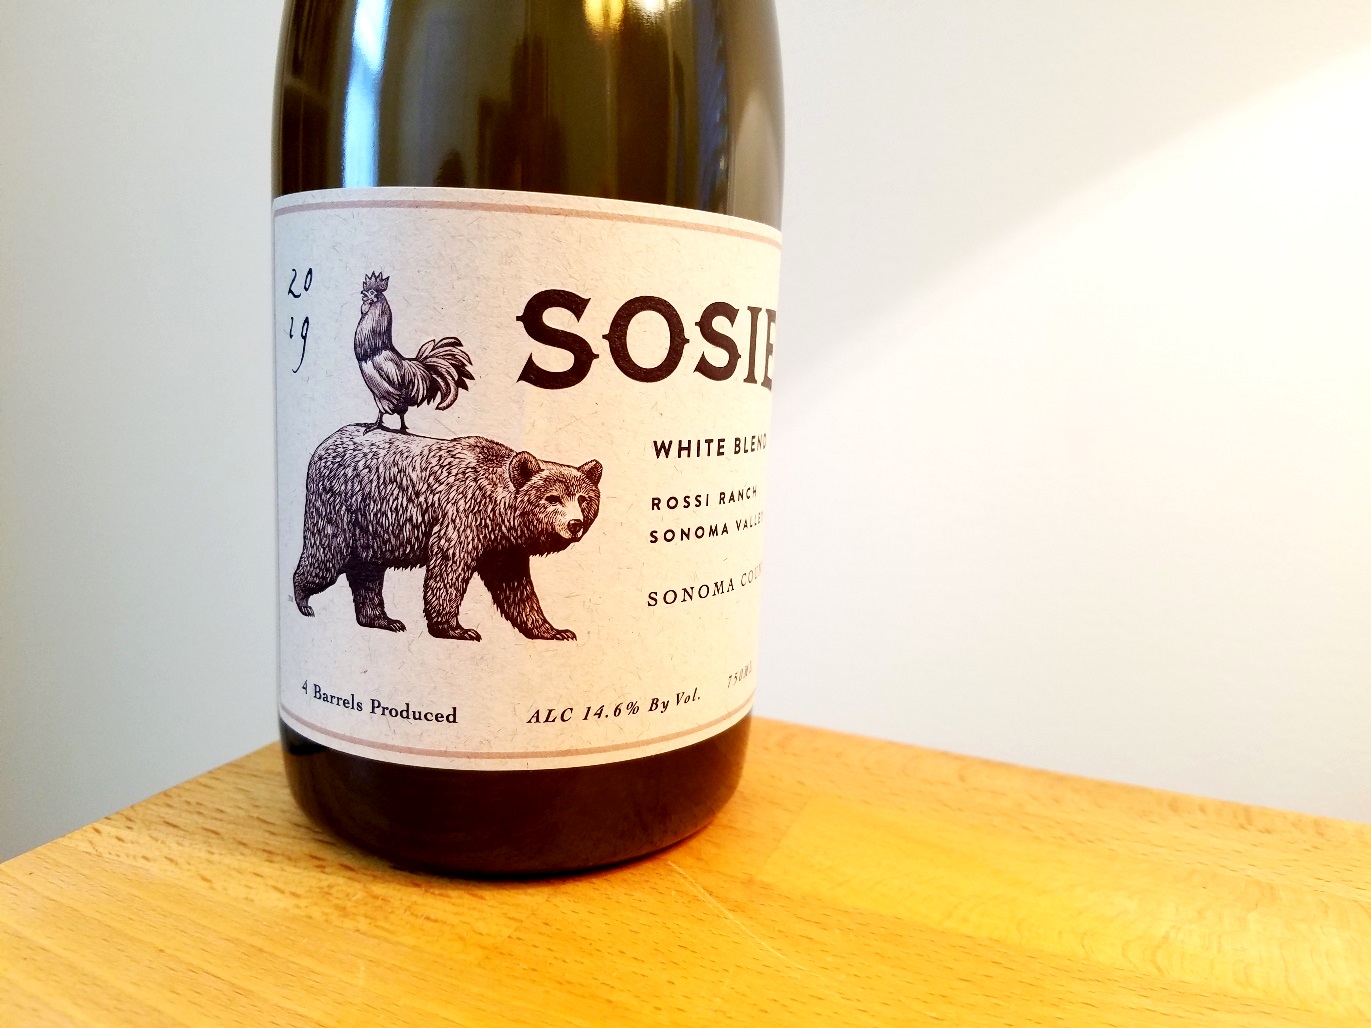 Sosie, White Blend 2019, Rossi Ranch, Sonoma County, California, Wine Casual